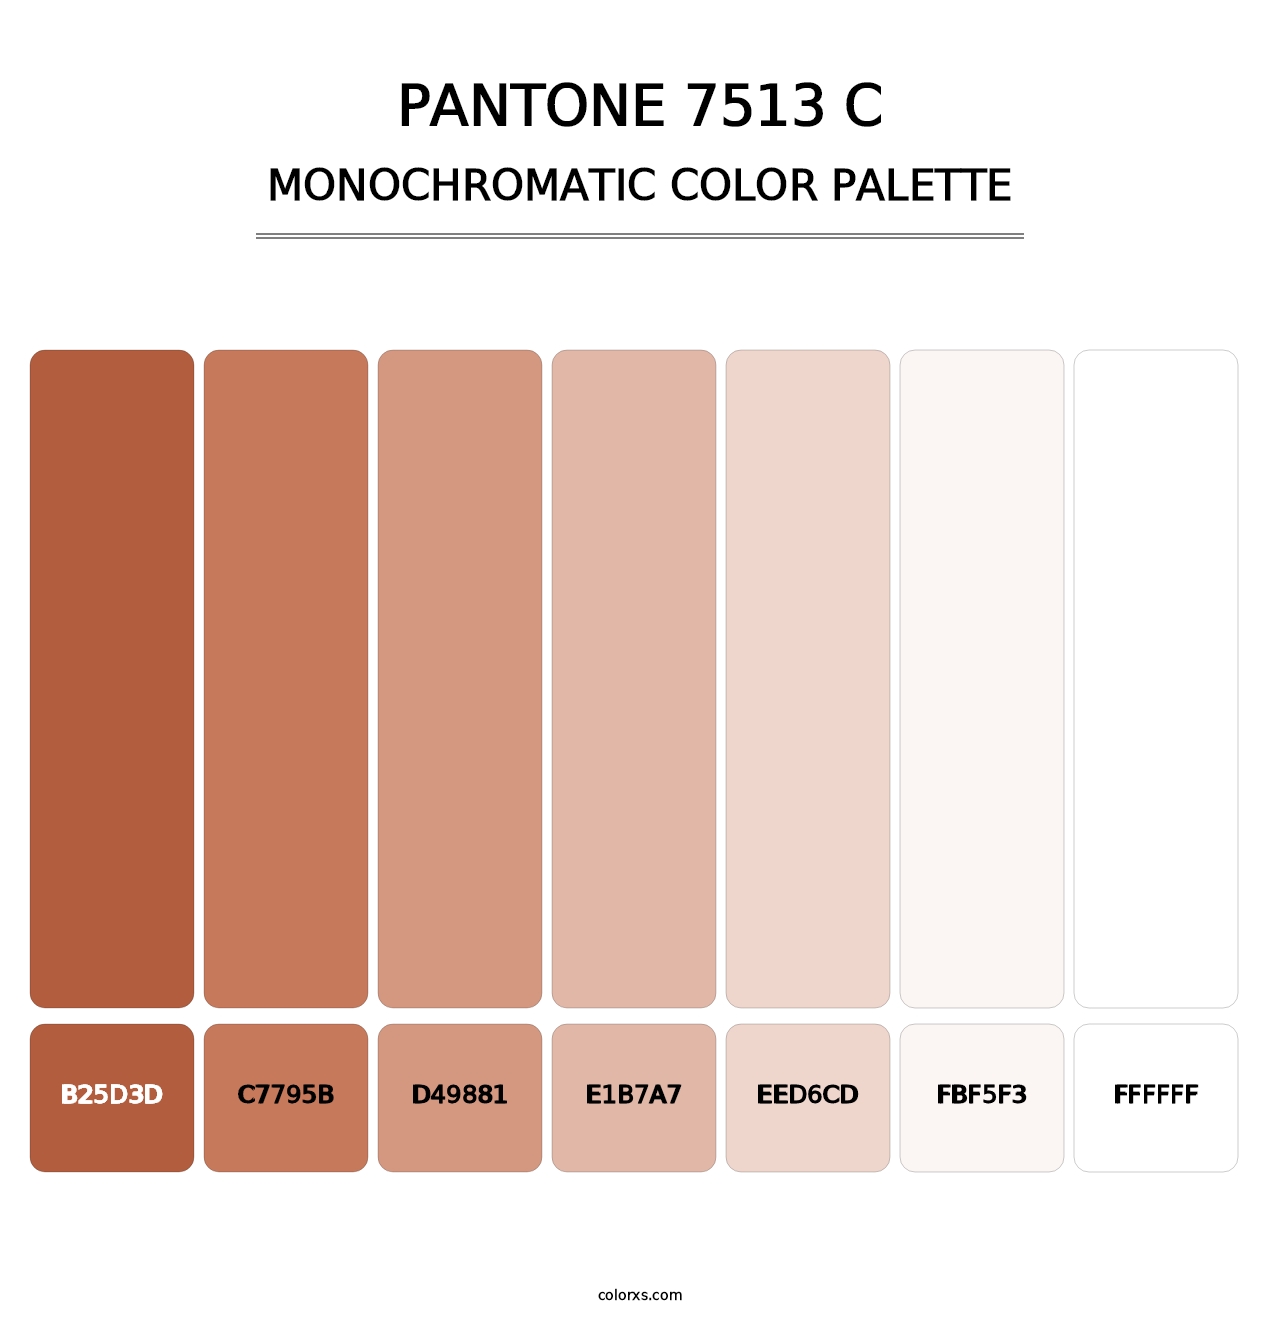 PANTONE 7513 C - Monochromatic Color Palette